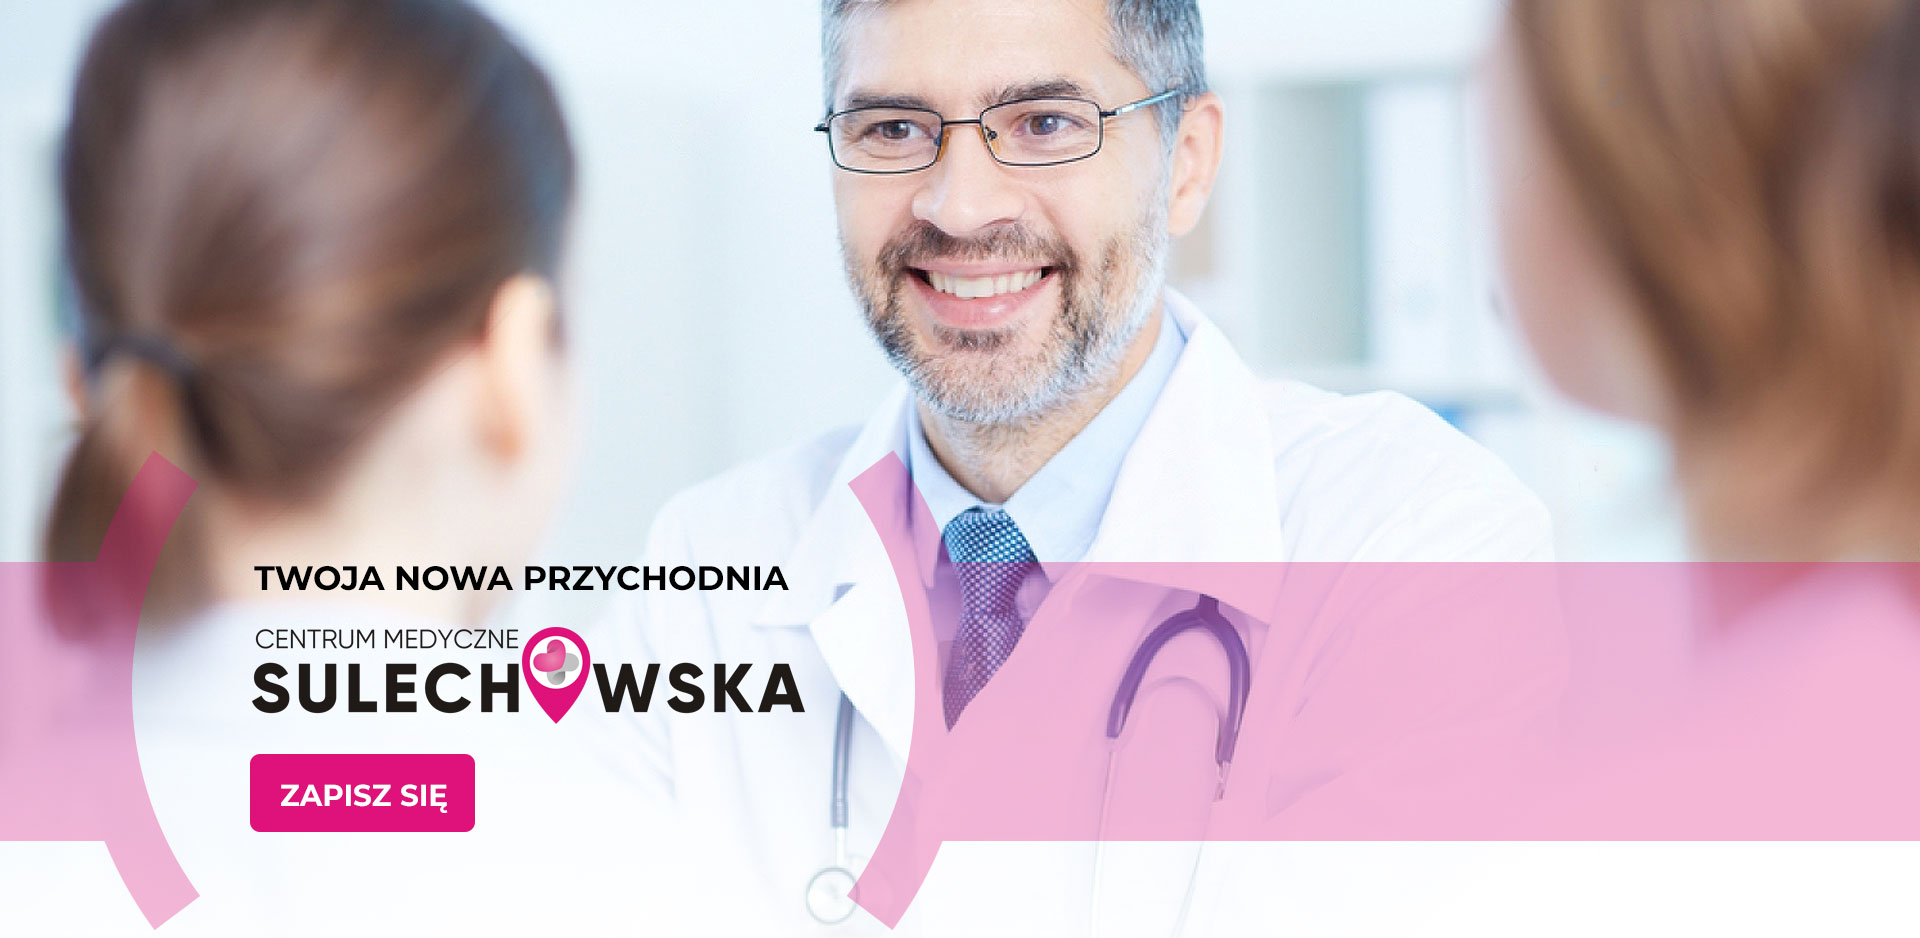 Kontakt Centrum Medyczne Sulechowska 4719